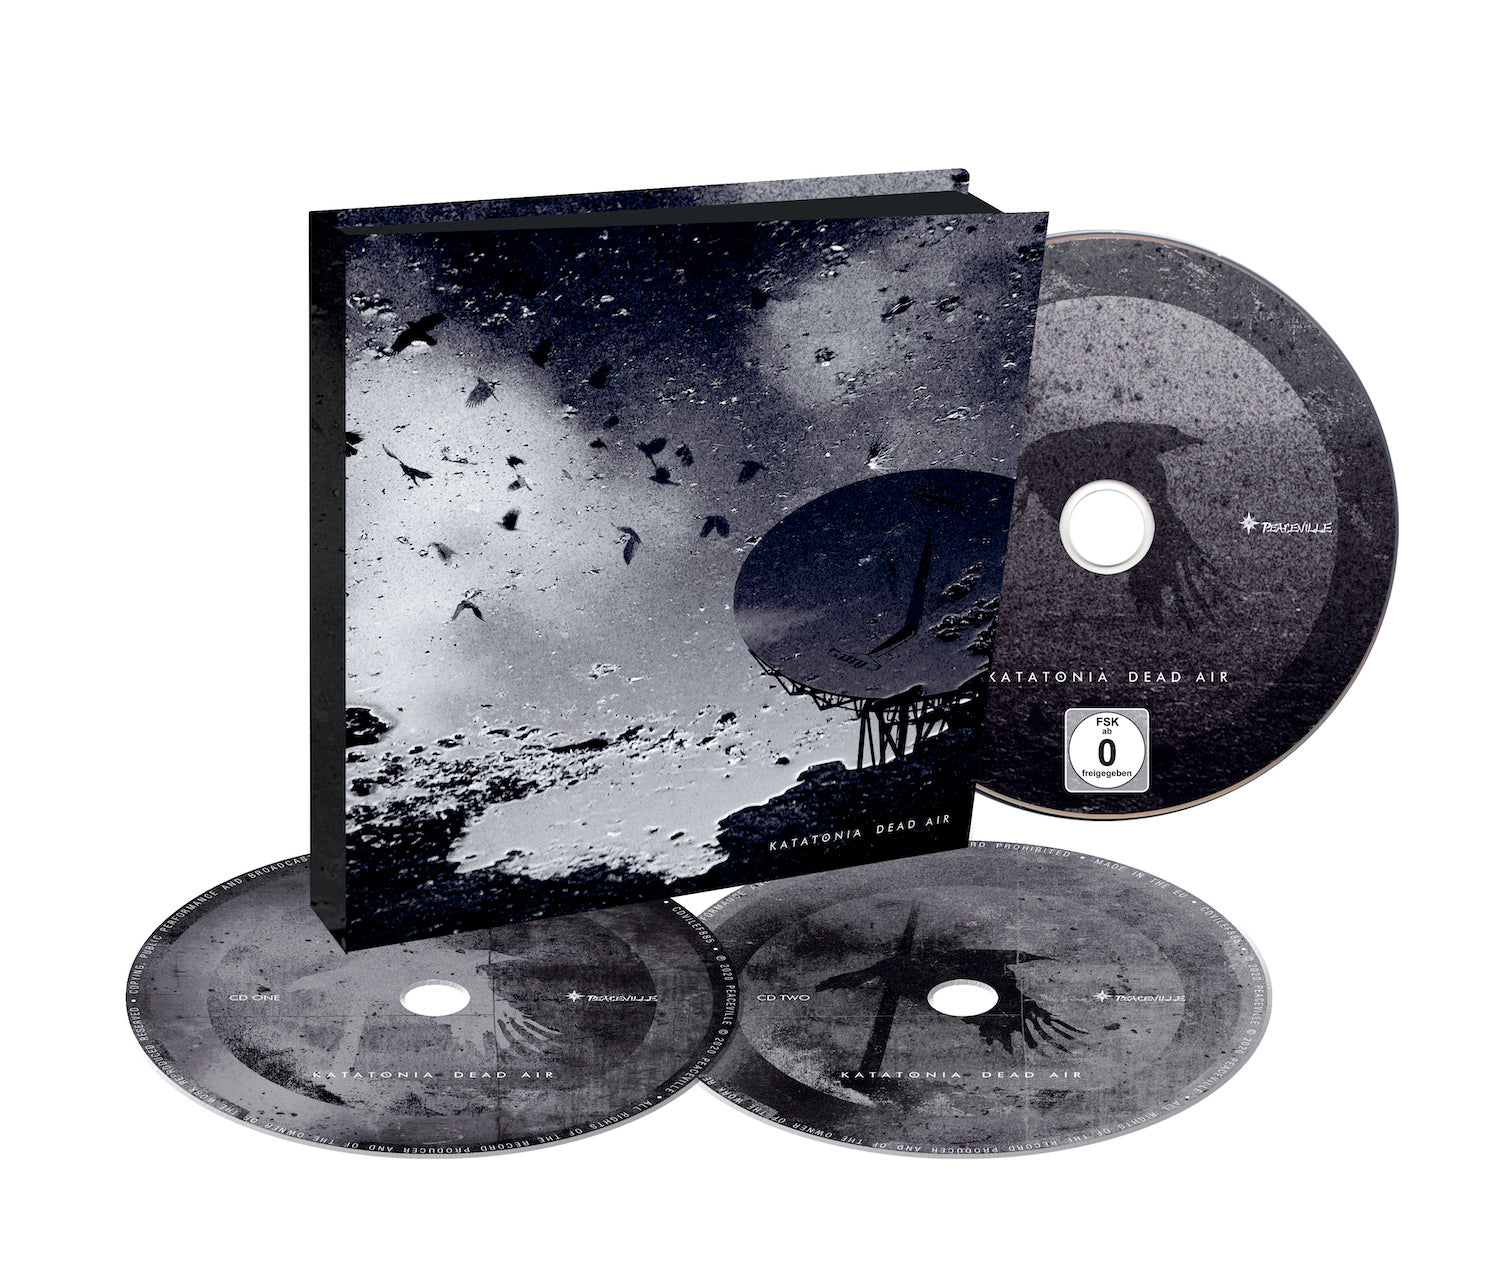 Katatonia "Dead Air" CD/DVD